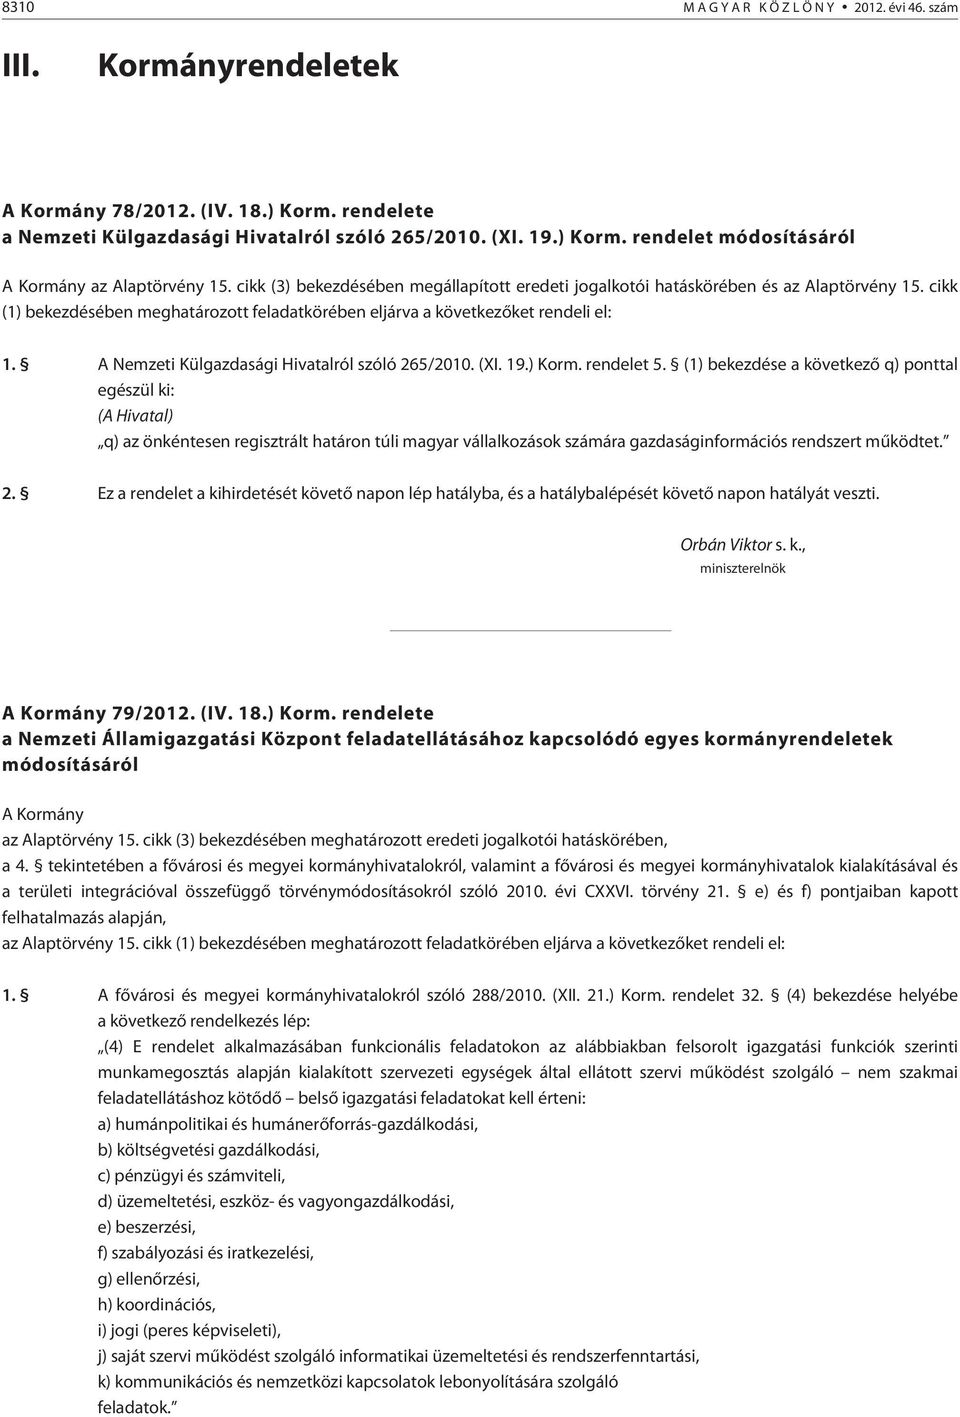 A Nemzeti Külgazdasági Hivatalról szóló 265/2010. (XI. 19.) Korm. rendelet 5.